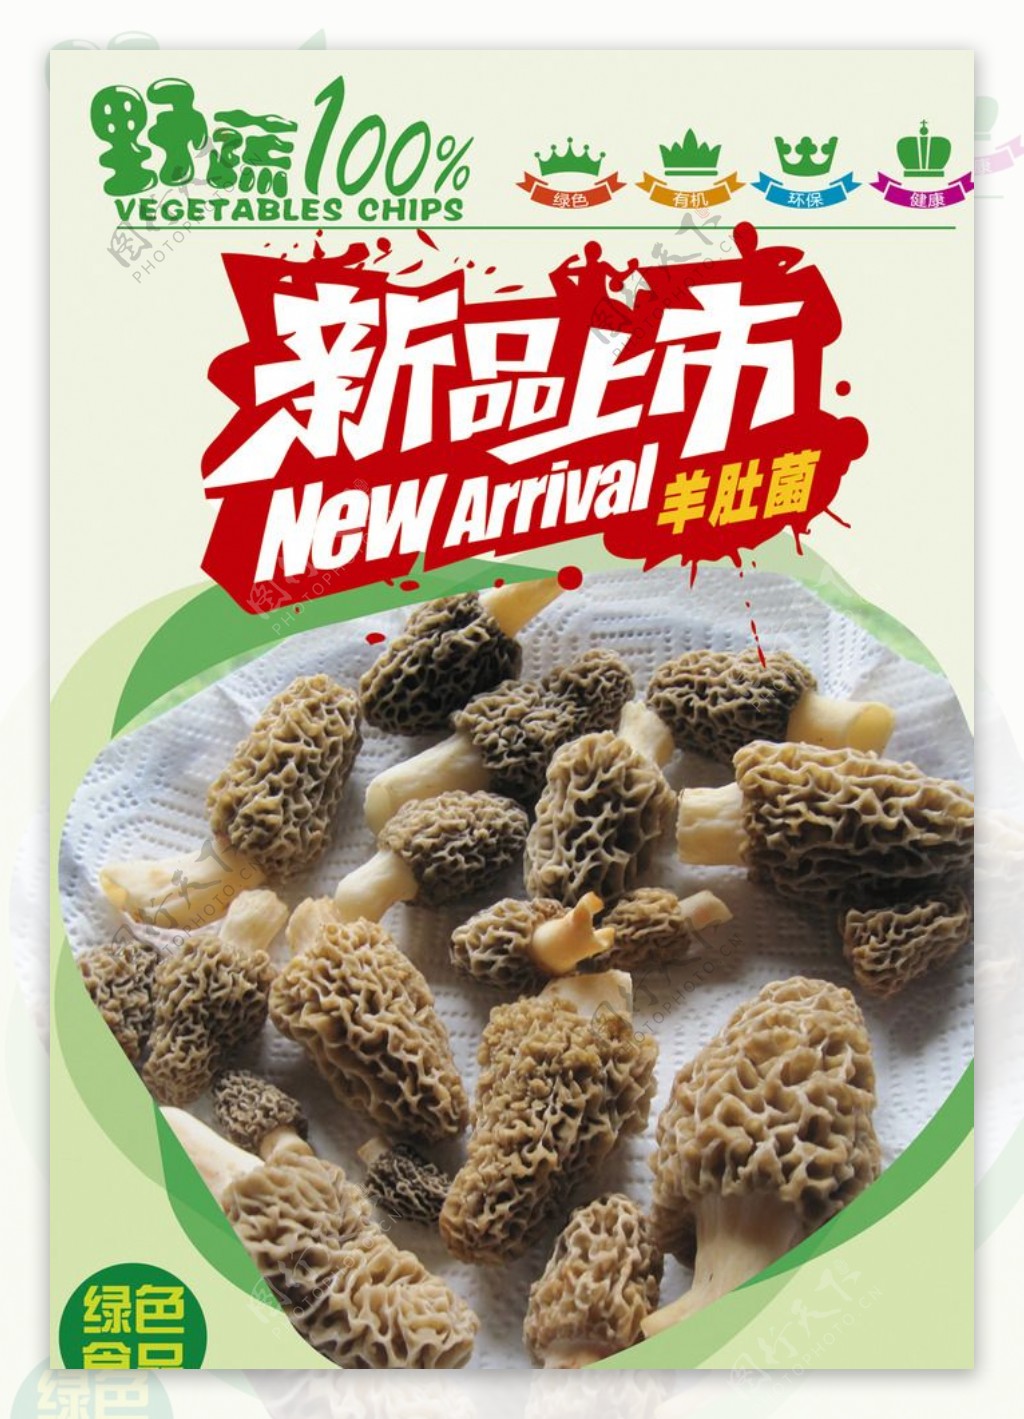 羊肚菌新品上市活动广告素材